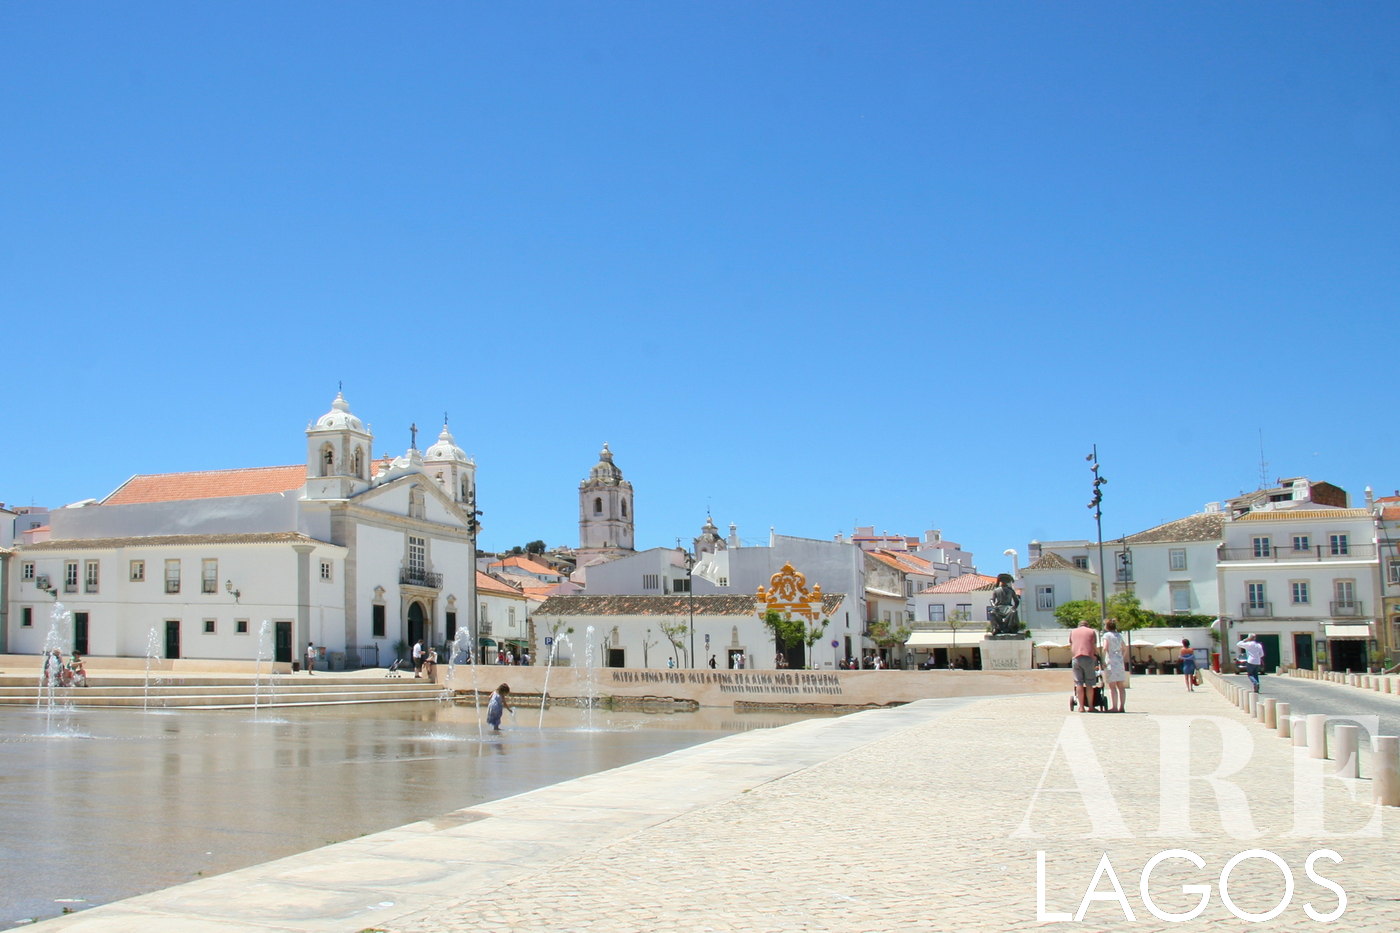 Razões para residir em Lagos, Portugal